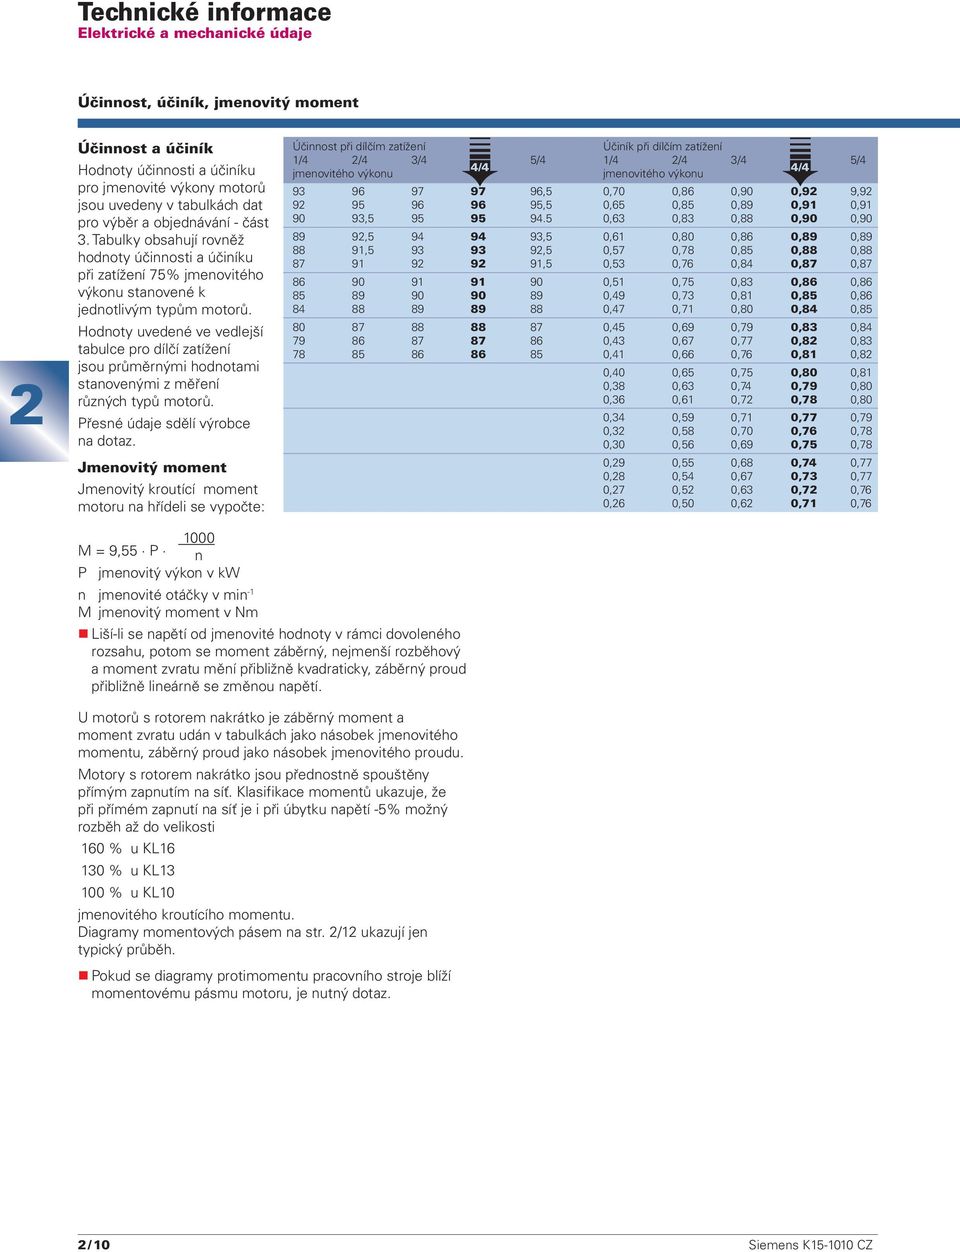 Hodnoty uvedené ve vedlejší tabulce pro dílčí zatížení jsou průměrnými hodnotami stanovenými z měření různých typů motorů. Přesné údaje sdělí výrobce na dotaz.